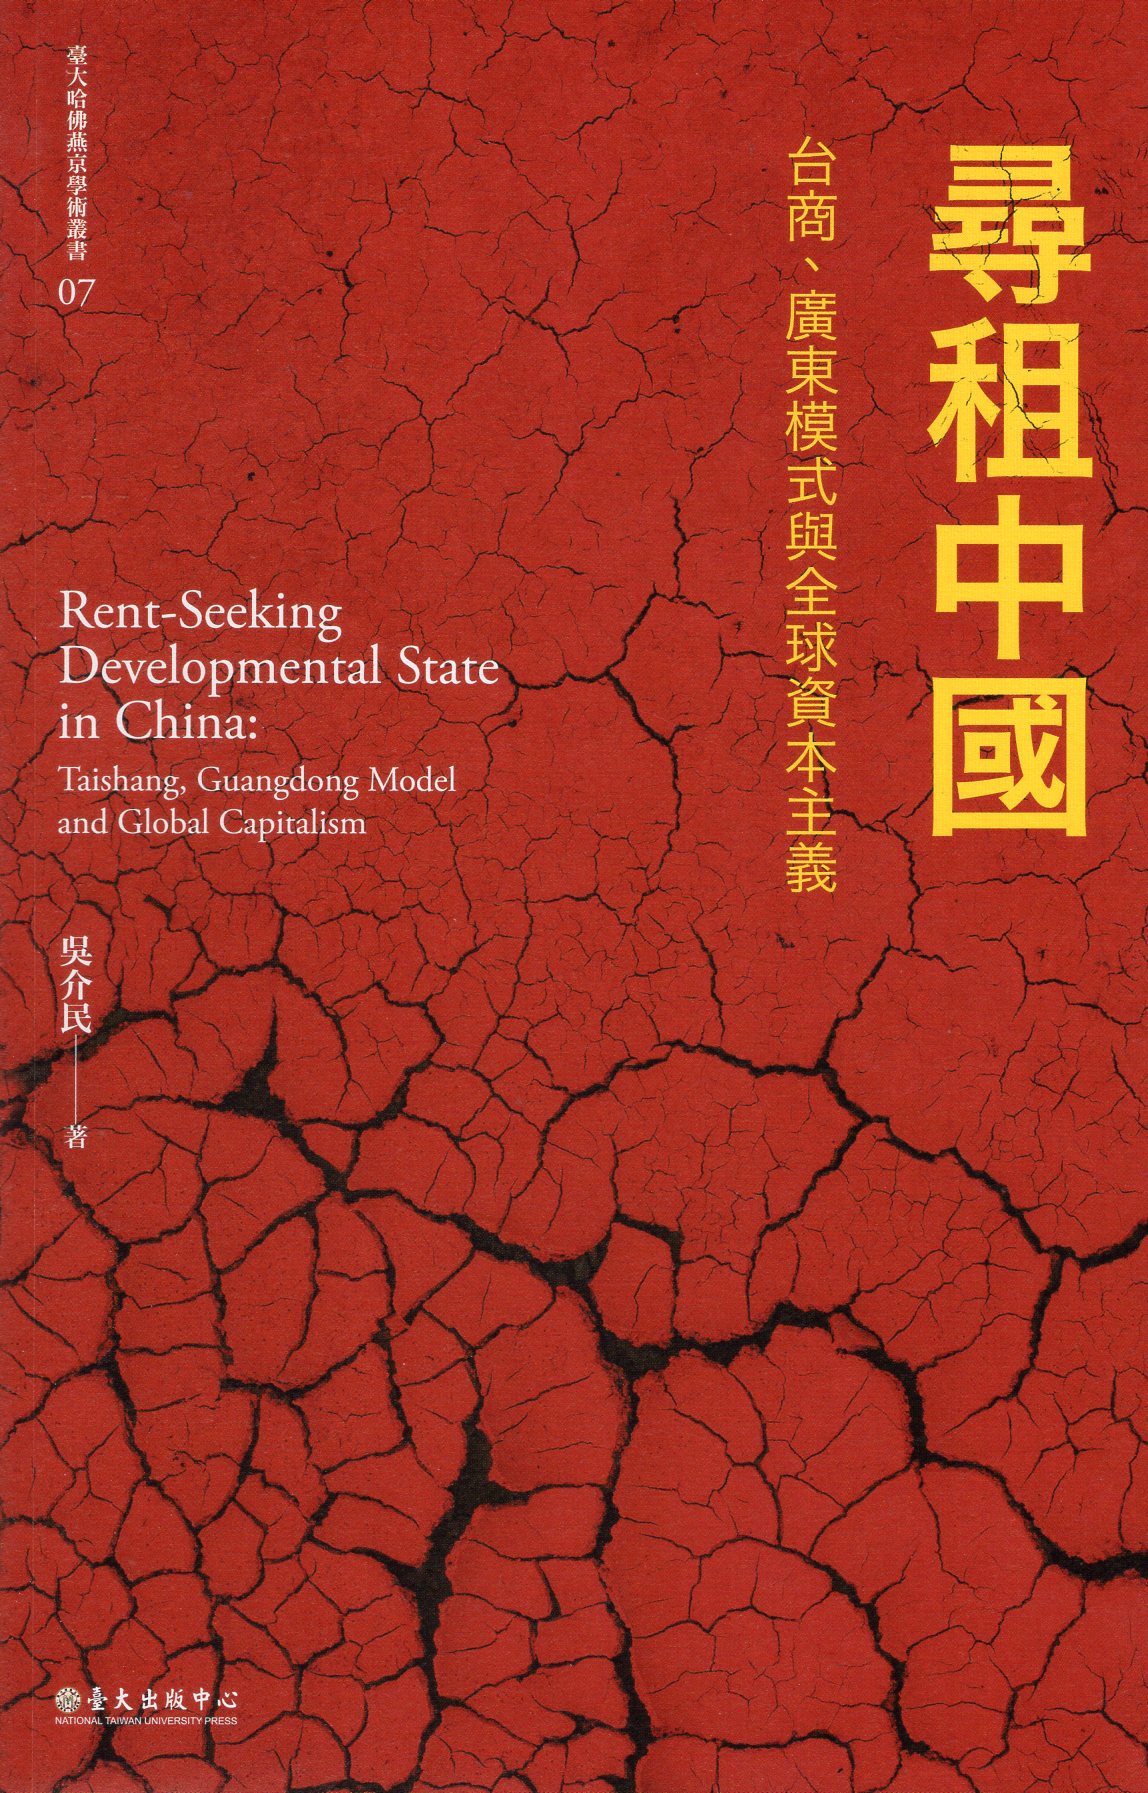 尋租中國: 台商、廣東模式與全球資本主義